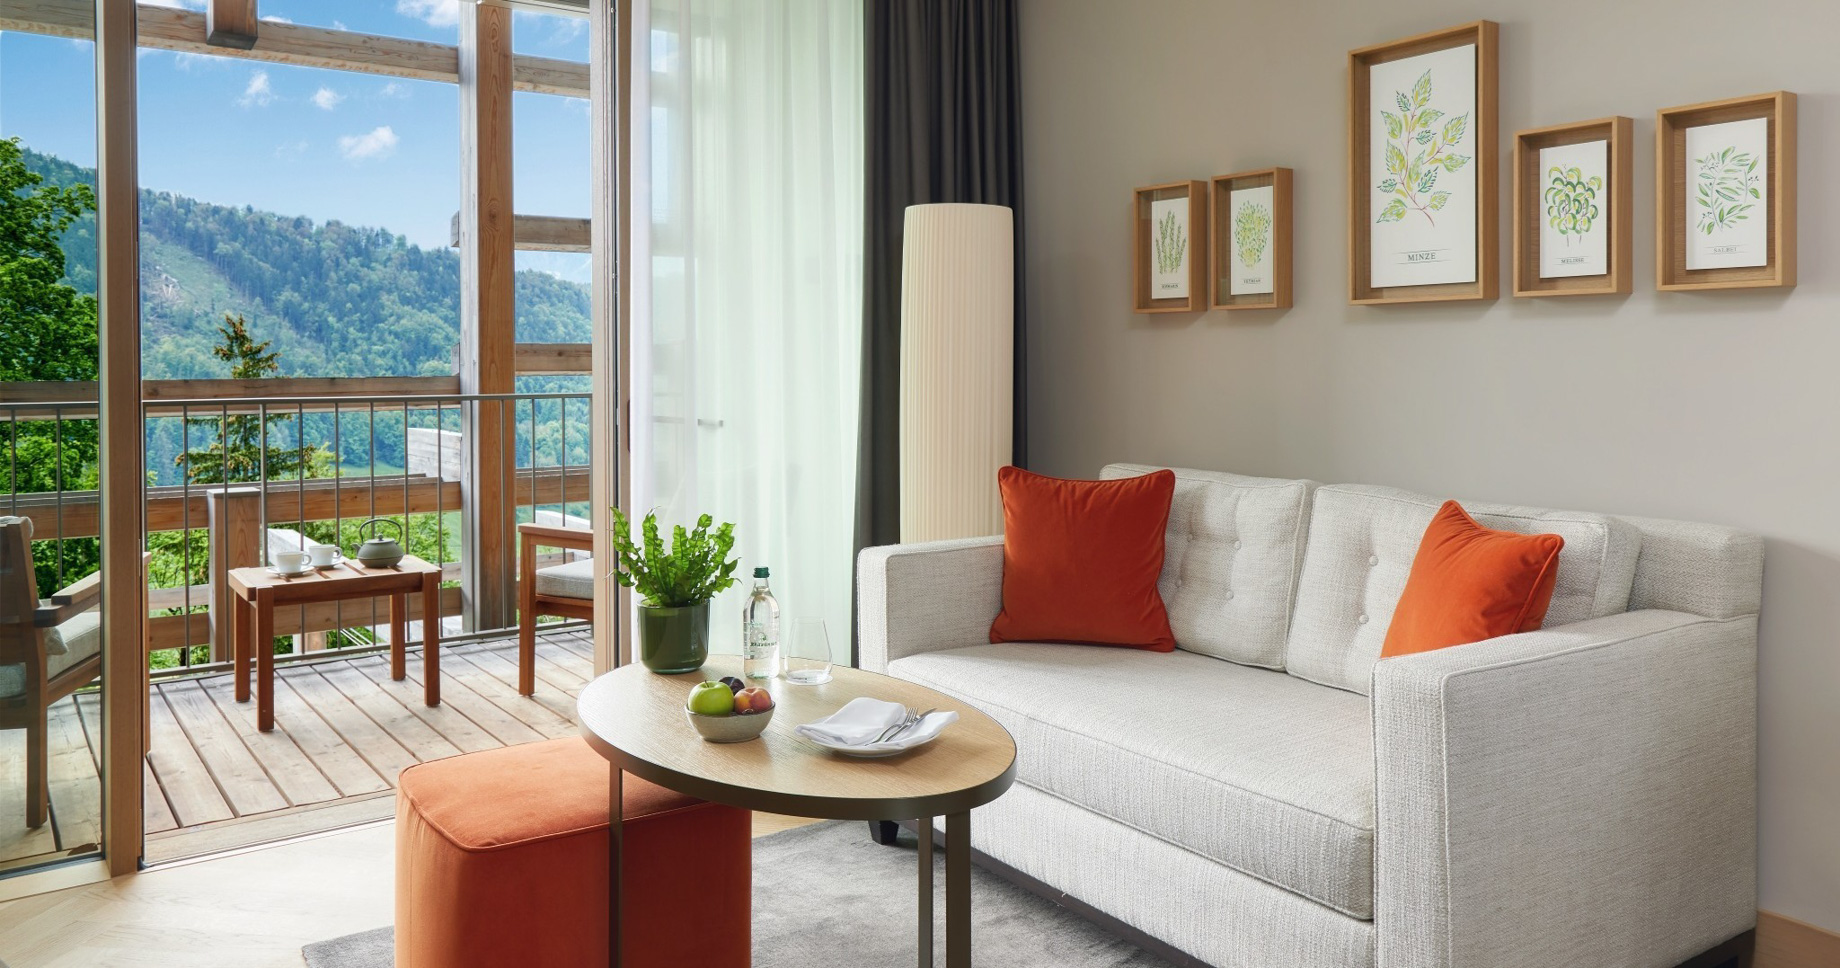 Waldhotel – Burgenstock Hotels & Resort – Obburgen, Switzerland – Executive Room Deck View